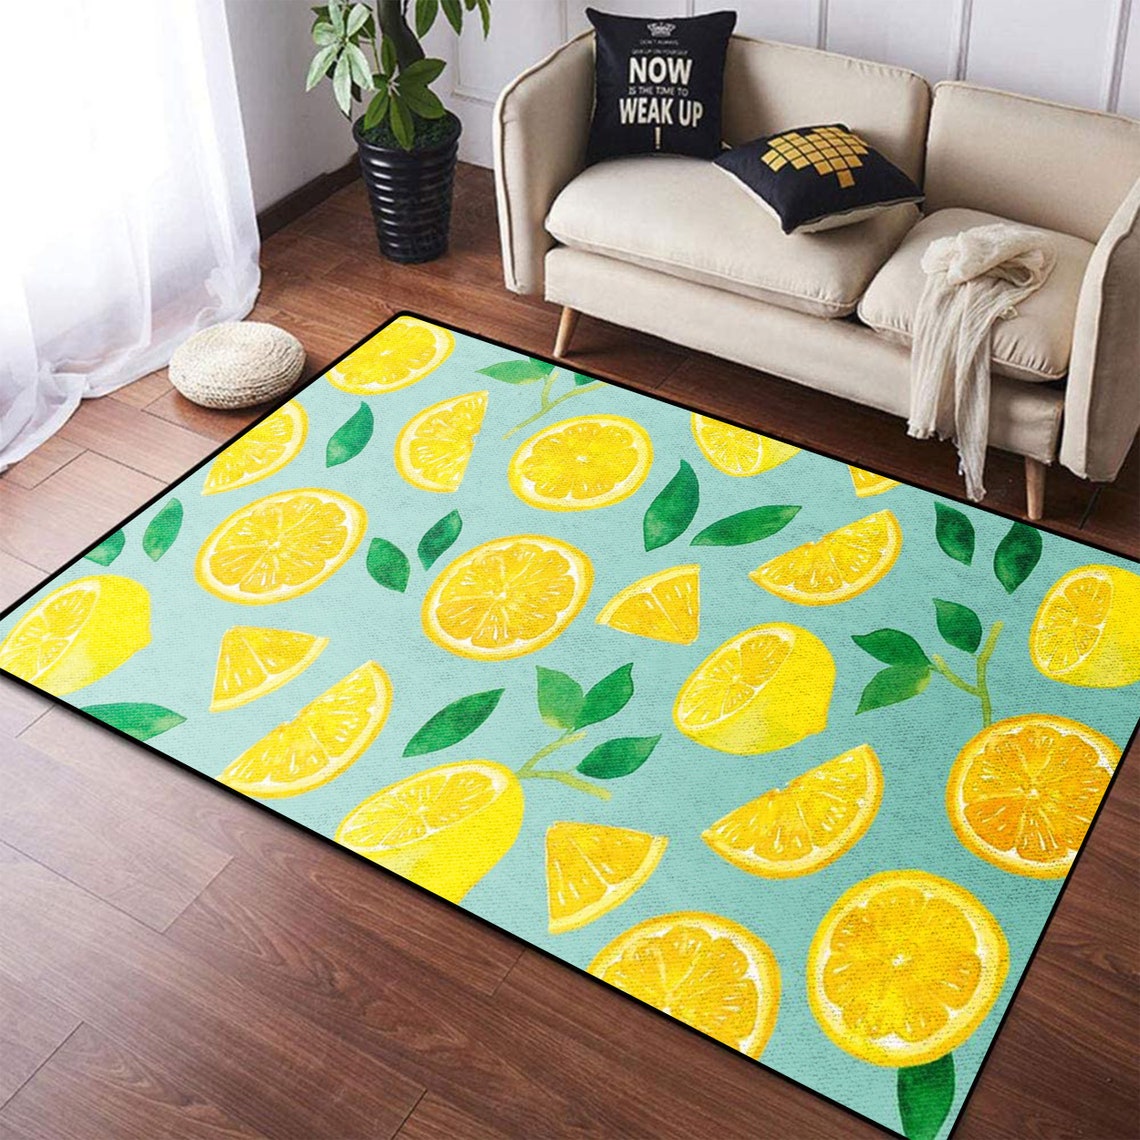 Lemon Fruit Decoration Rug Cute Mat Gift For Family Area | Etsy